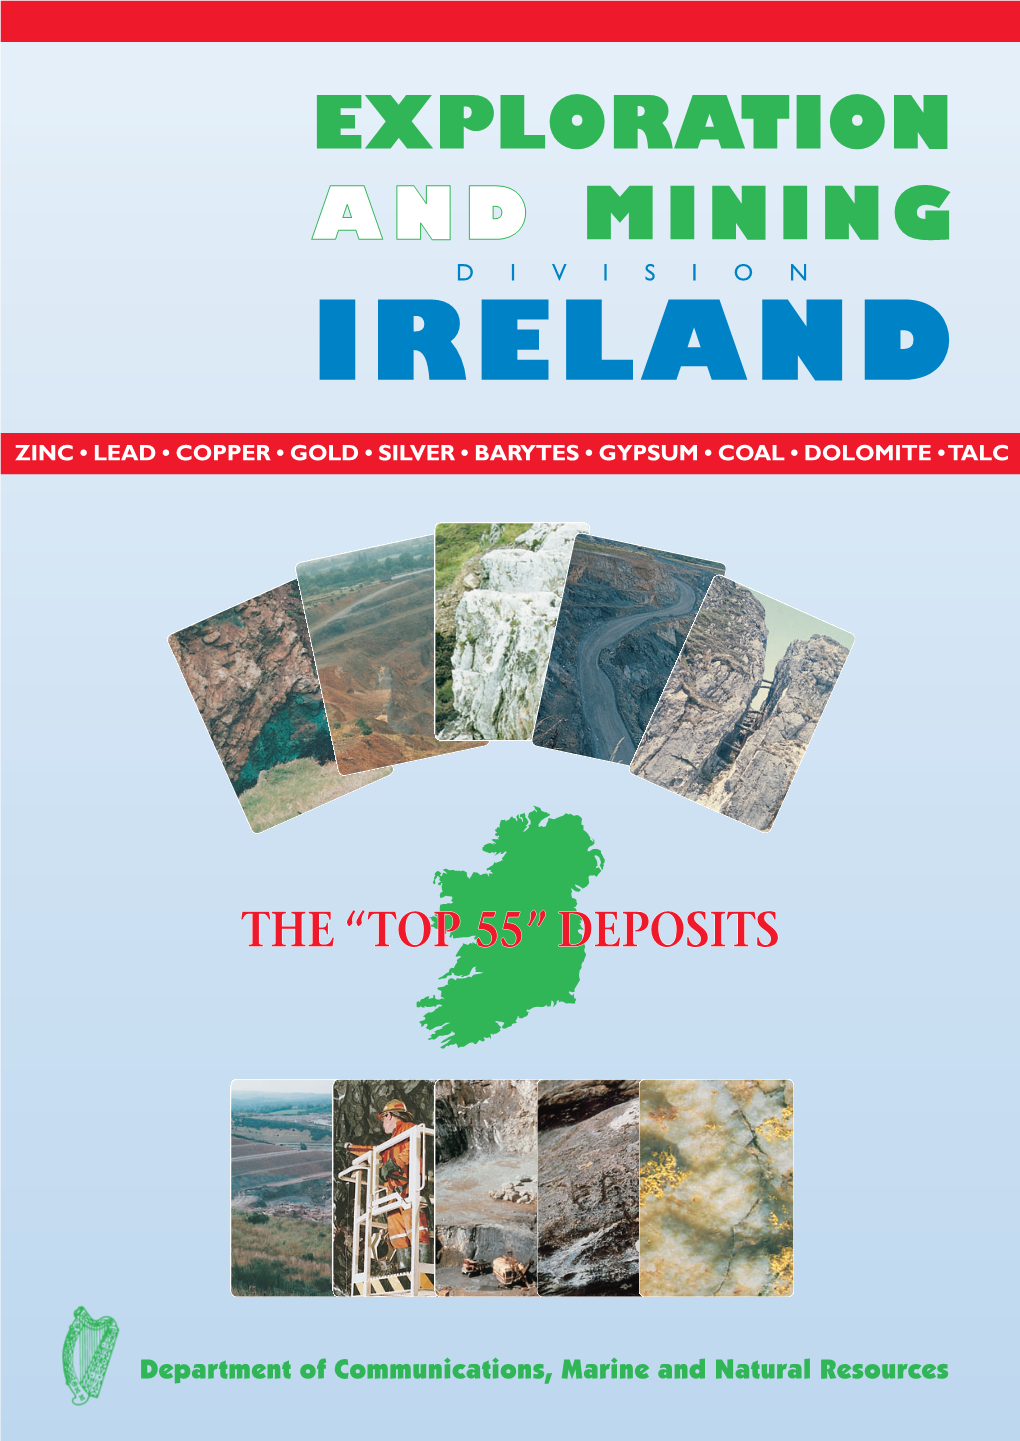 Top 55" Deposits in Ireland"